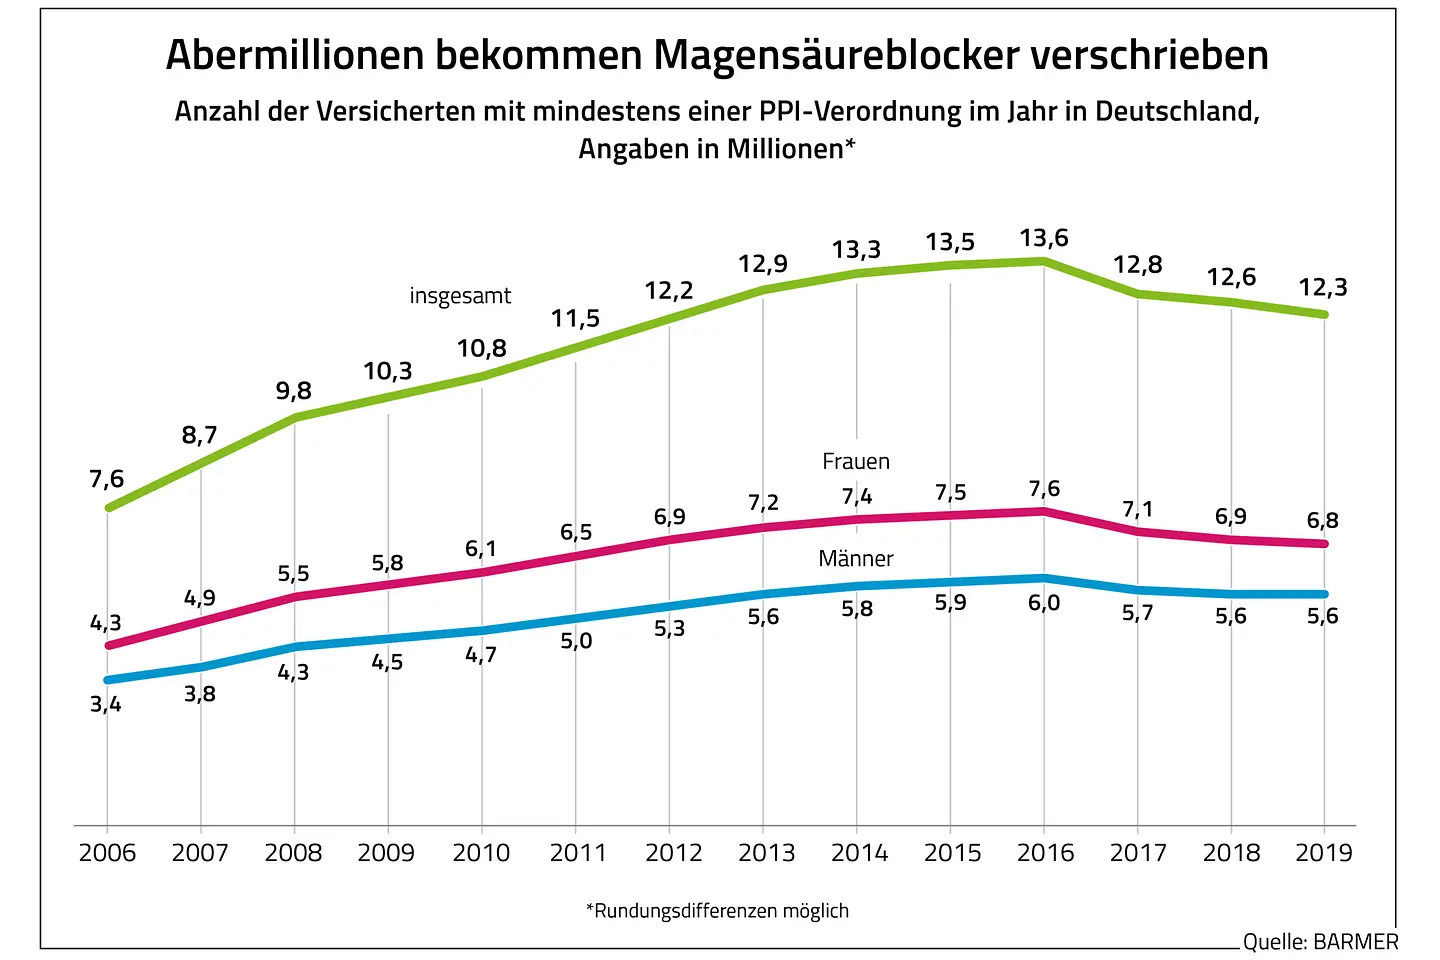 Die Grafik zeigt die Anzahl der Versicherten mit mindestens einer PPI-Verordnung im Jahr in Deutschland